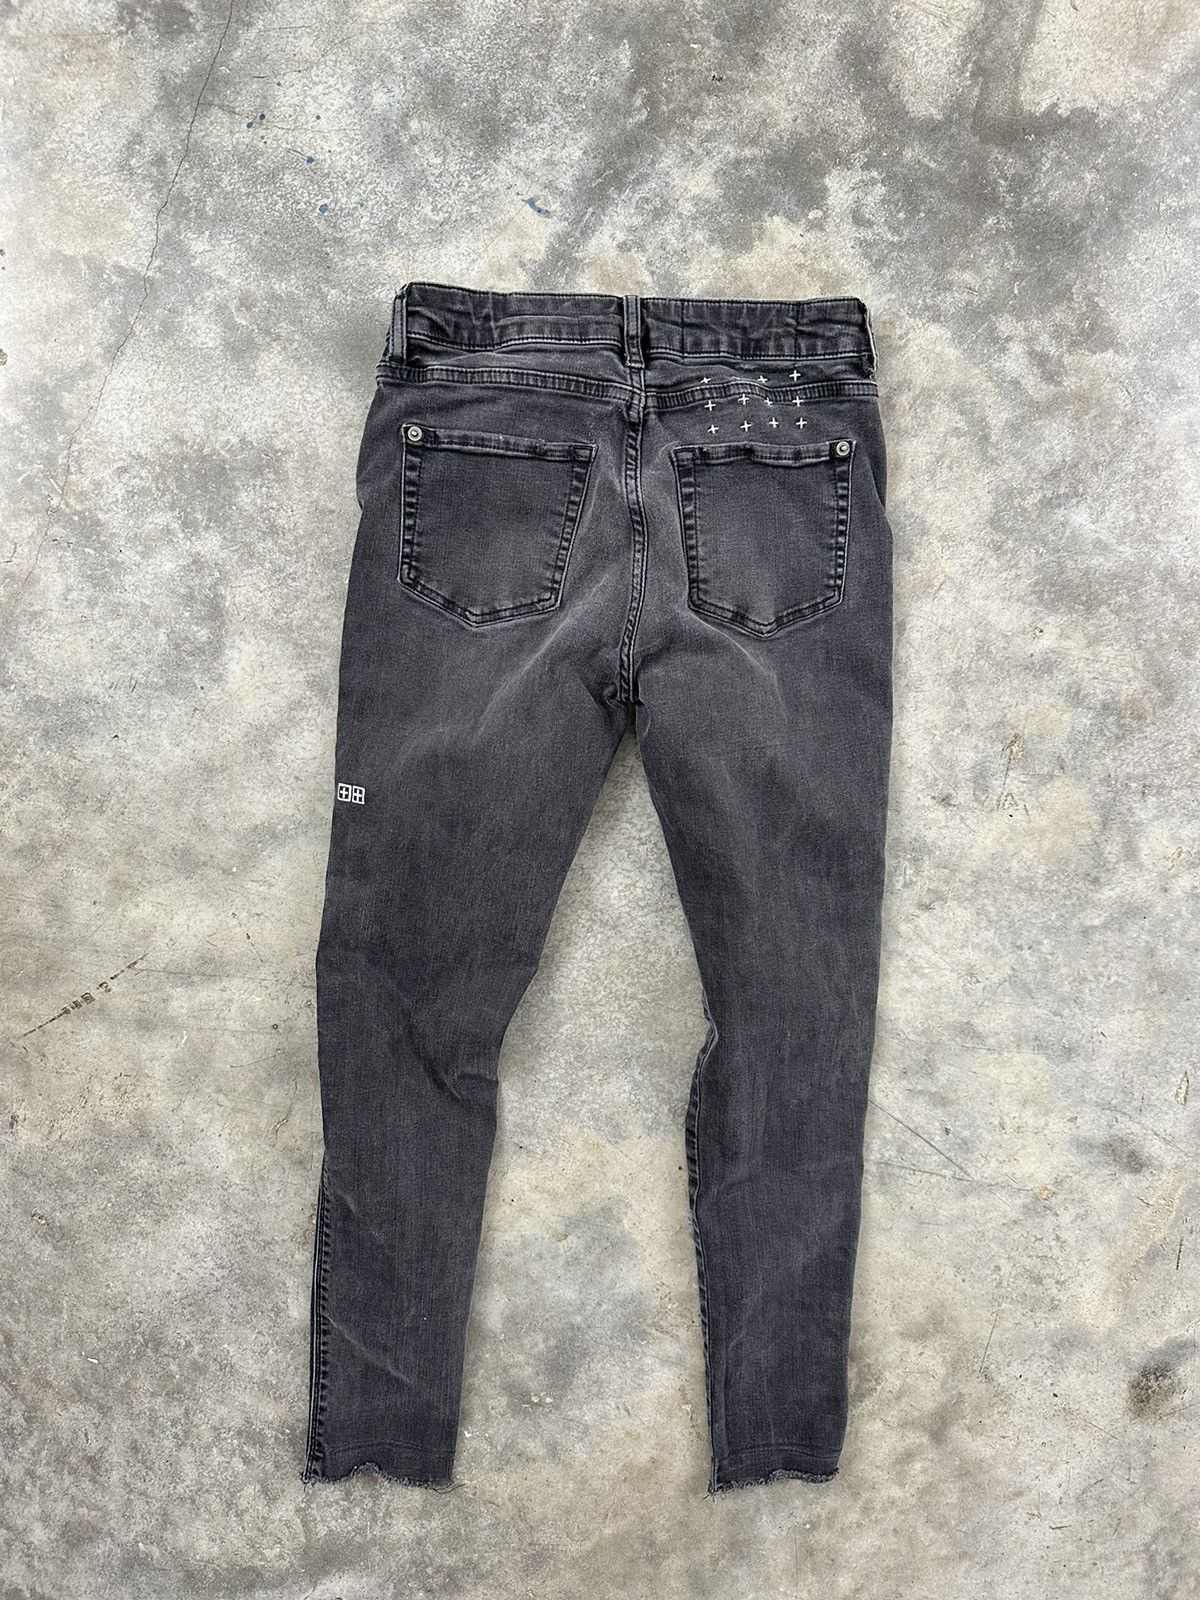 Pre-owned Ksubi Van Winkle Distressed Skinny Jeans Sz. 28 ++ Black In Grey